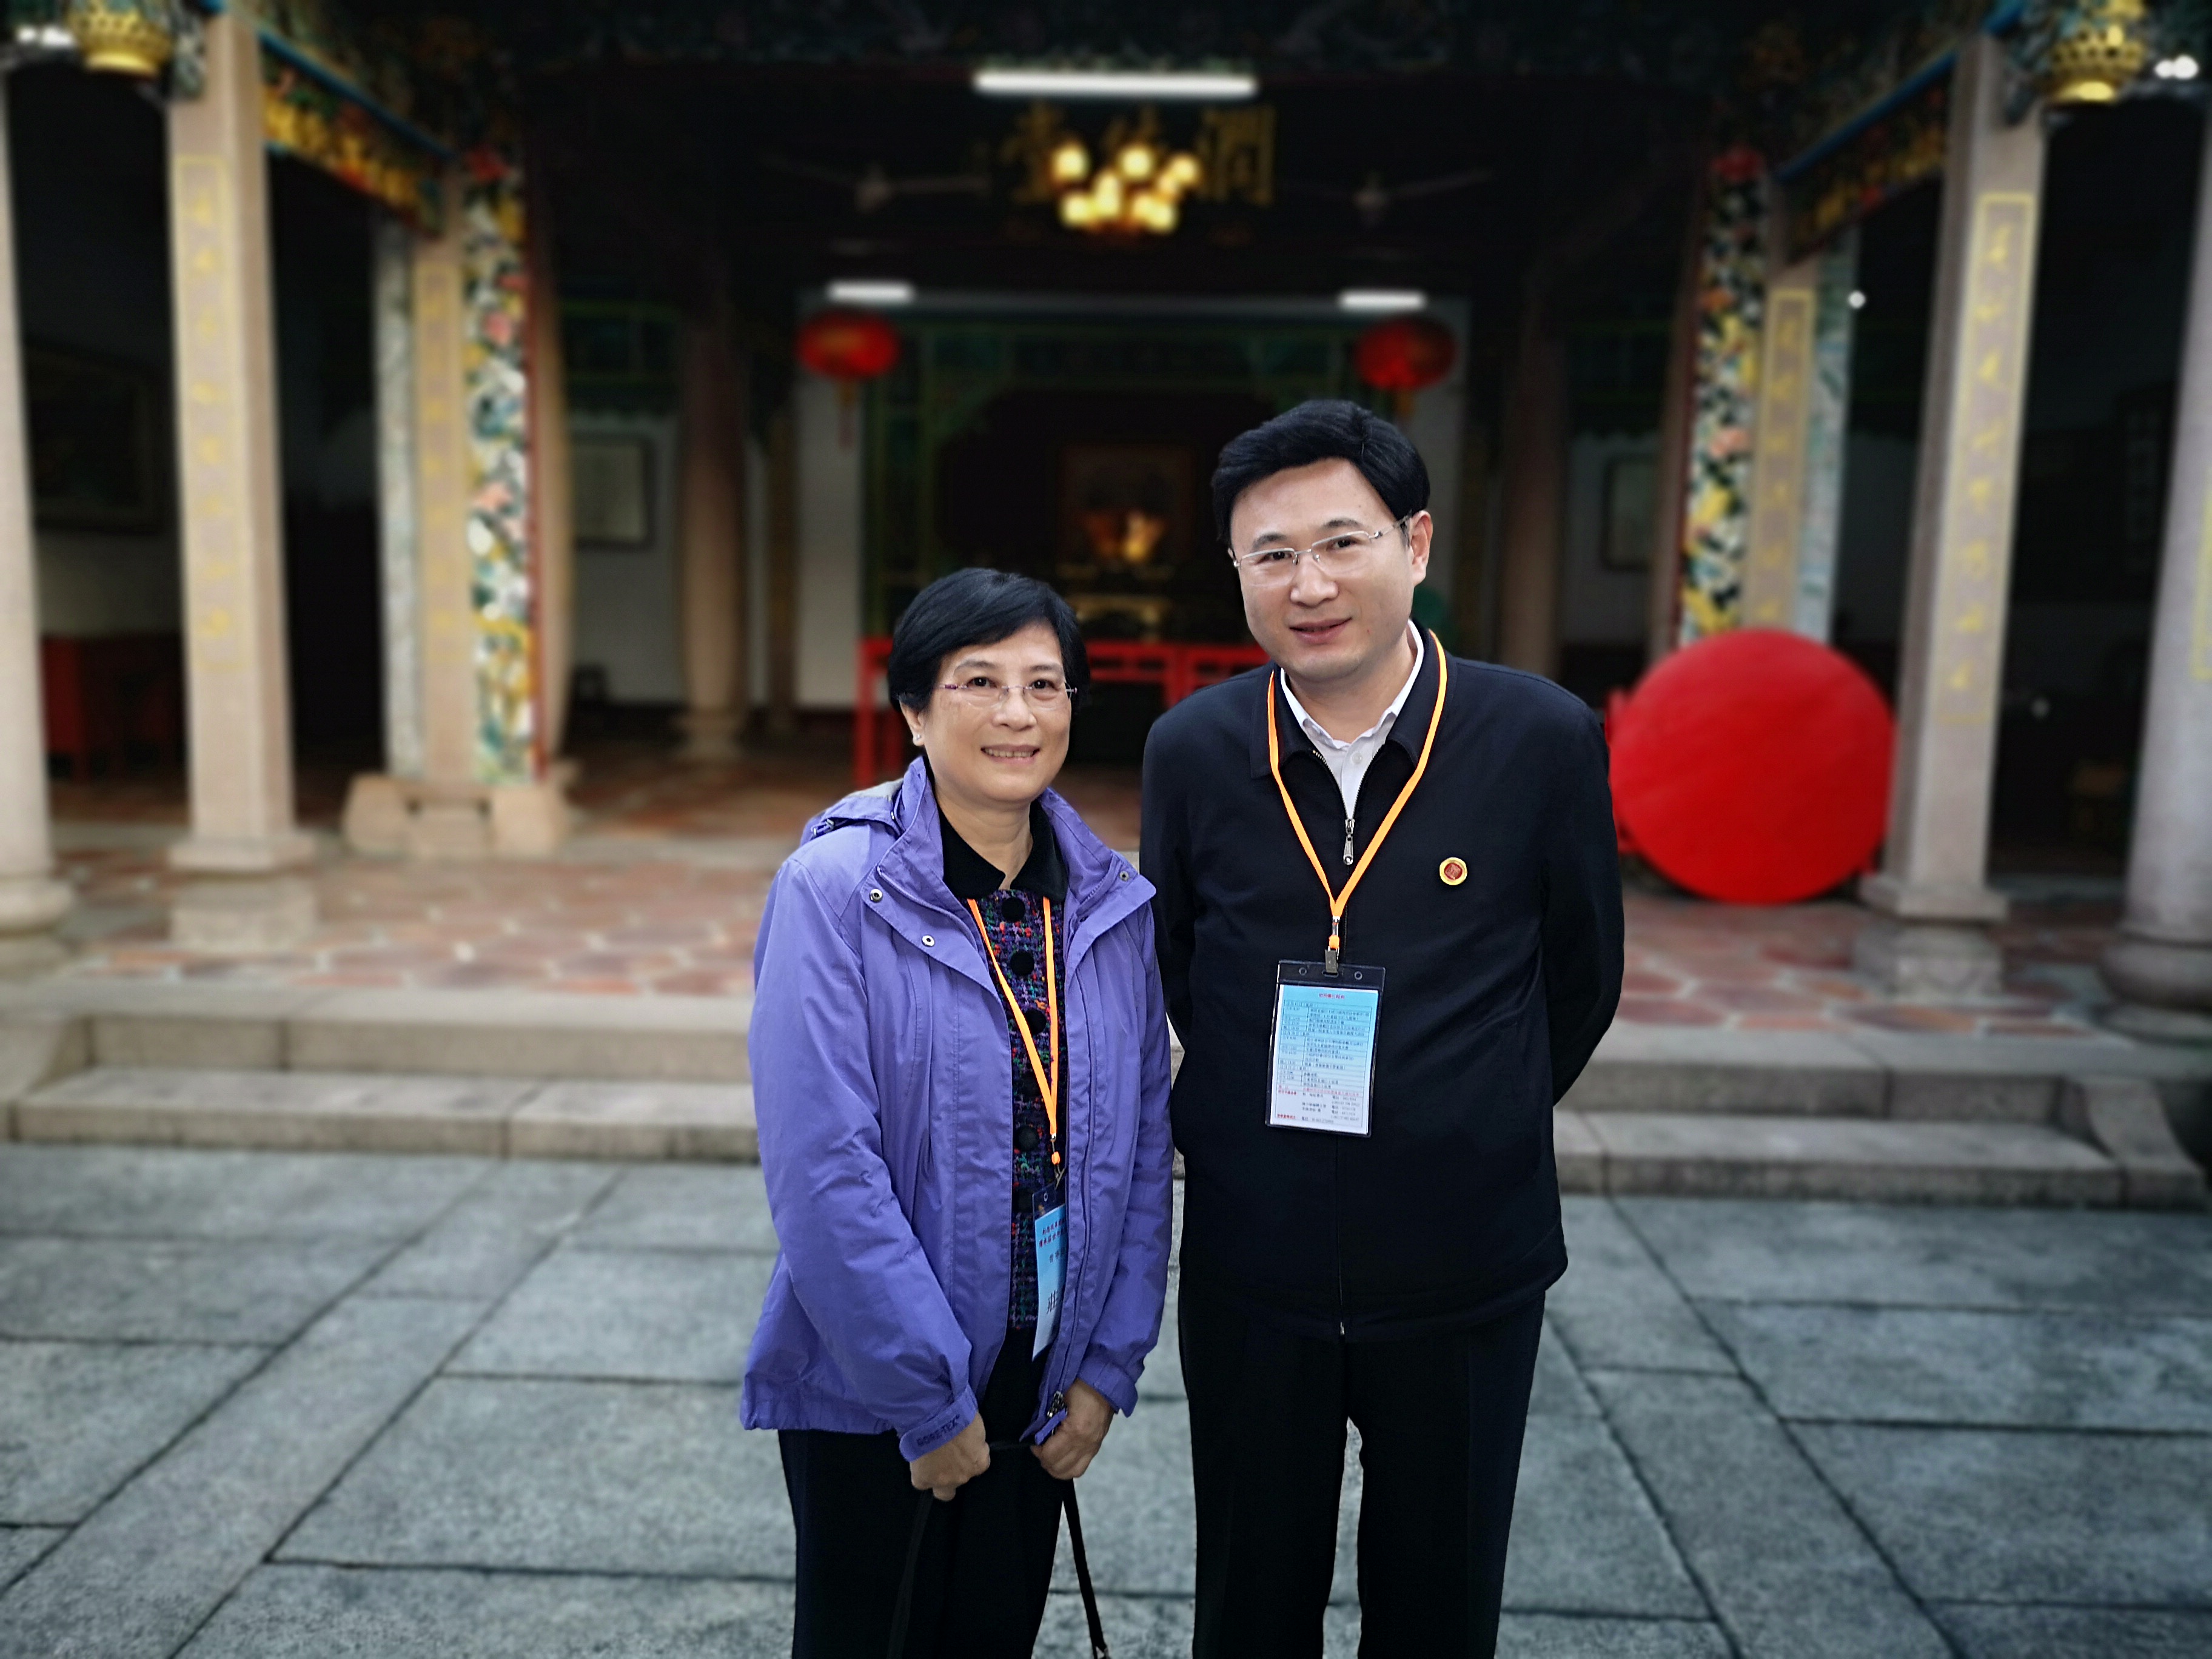 魏良鹏,张晓光应邀出席香港庄世平基金会等机构组织的普宁交流团活动